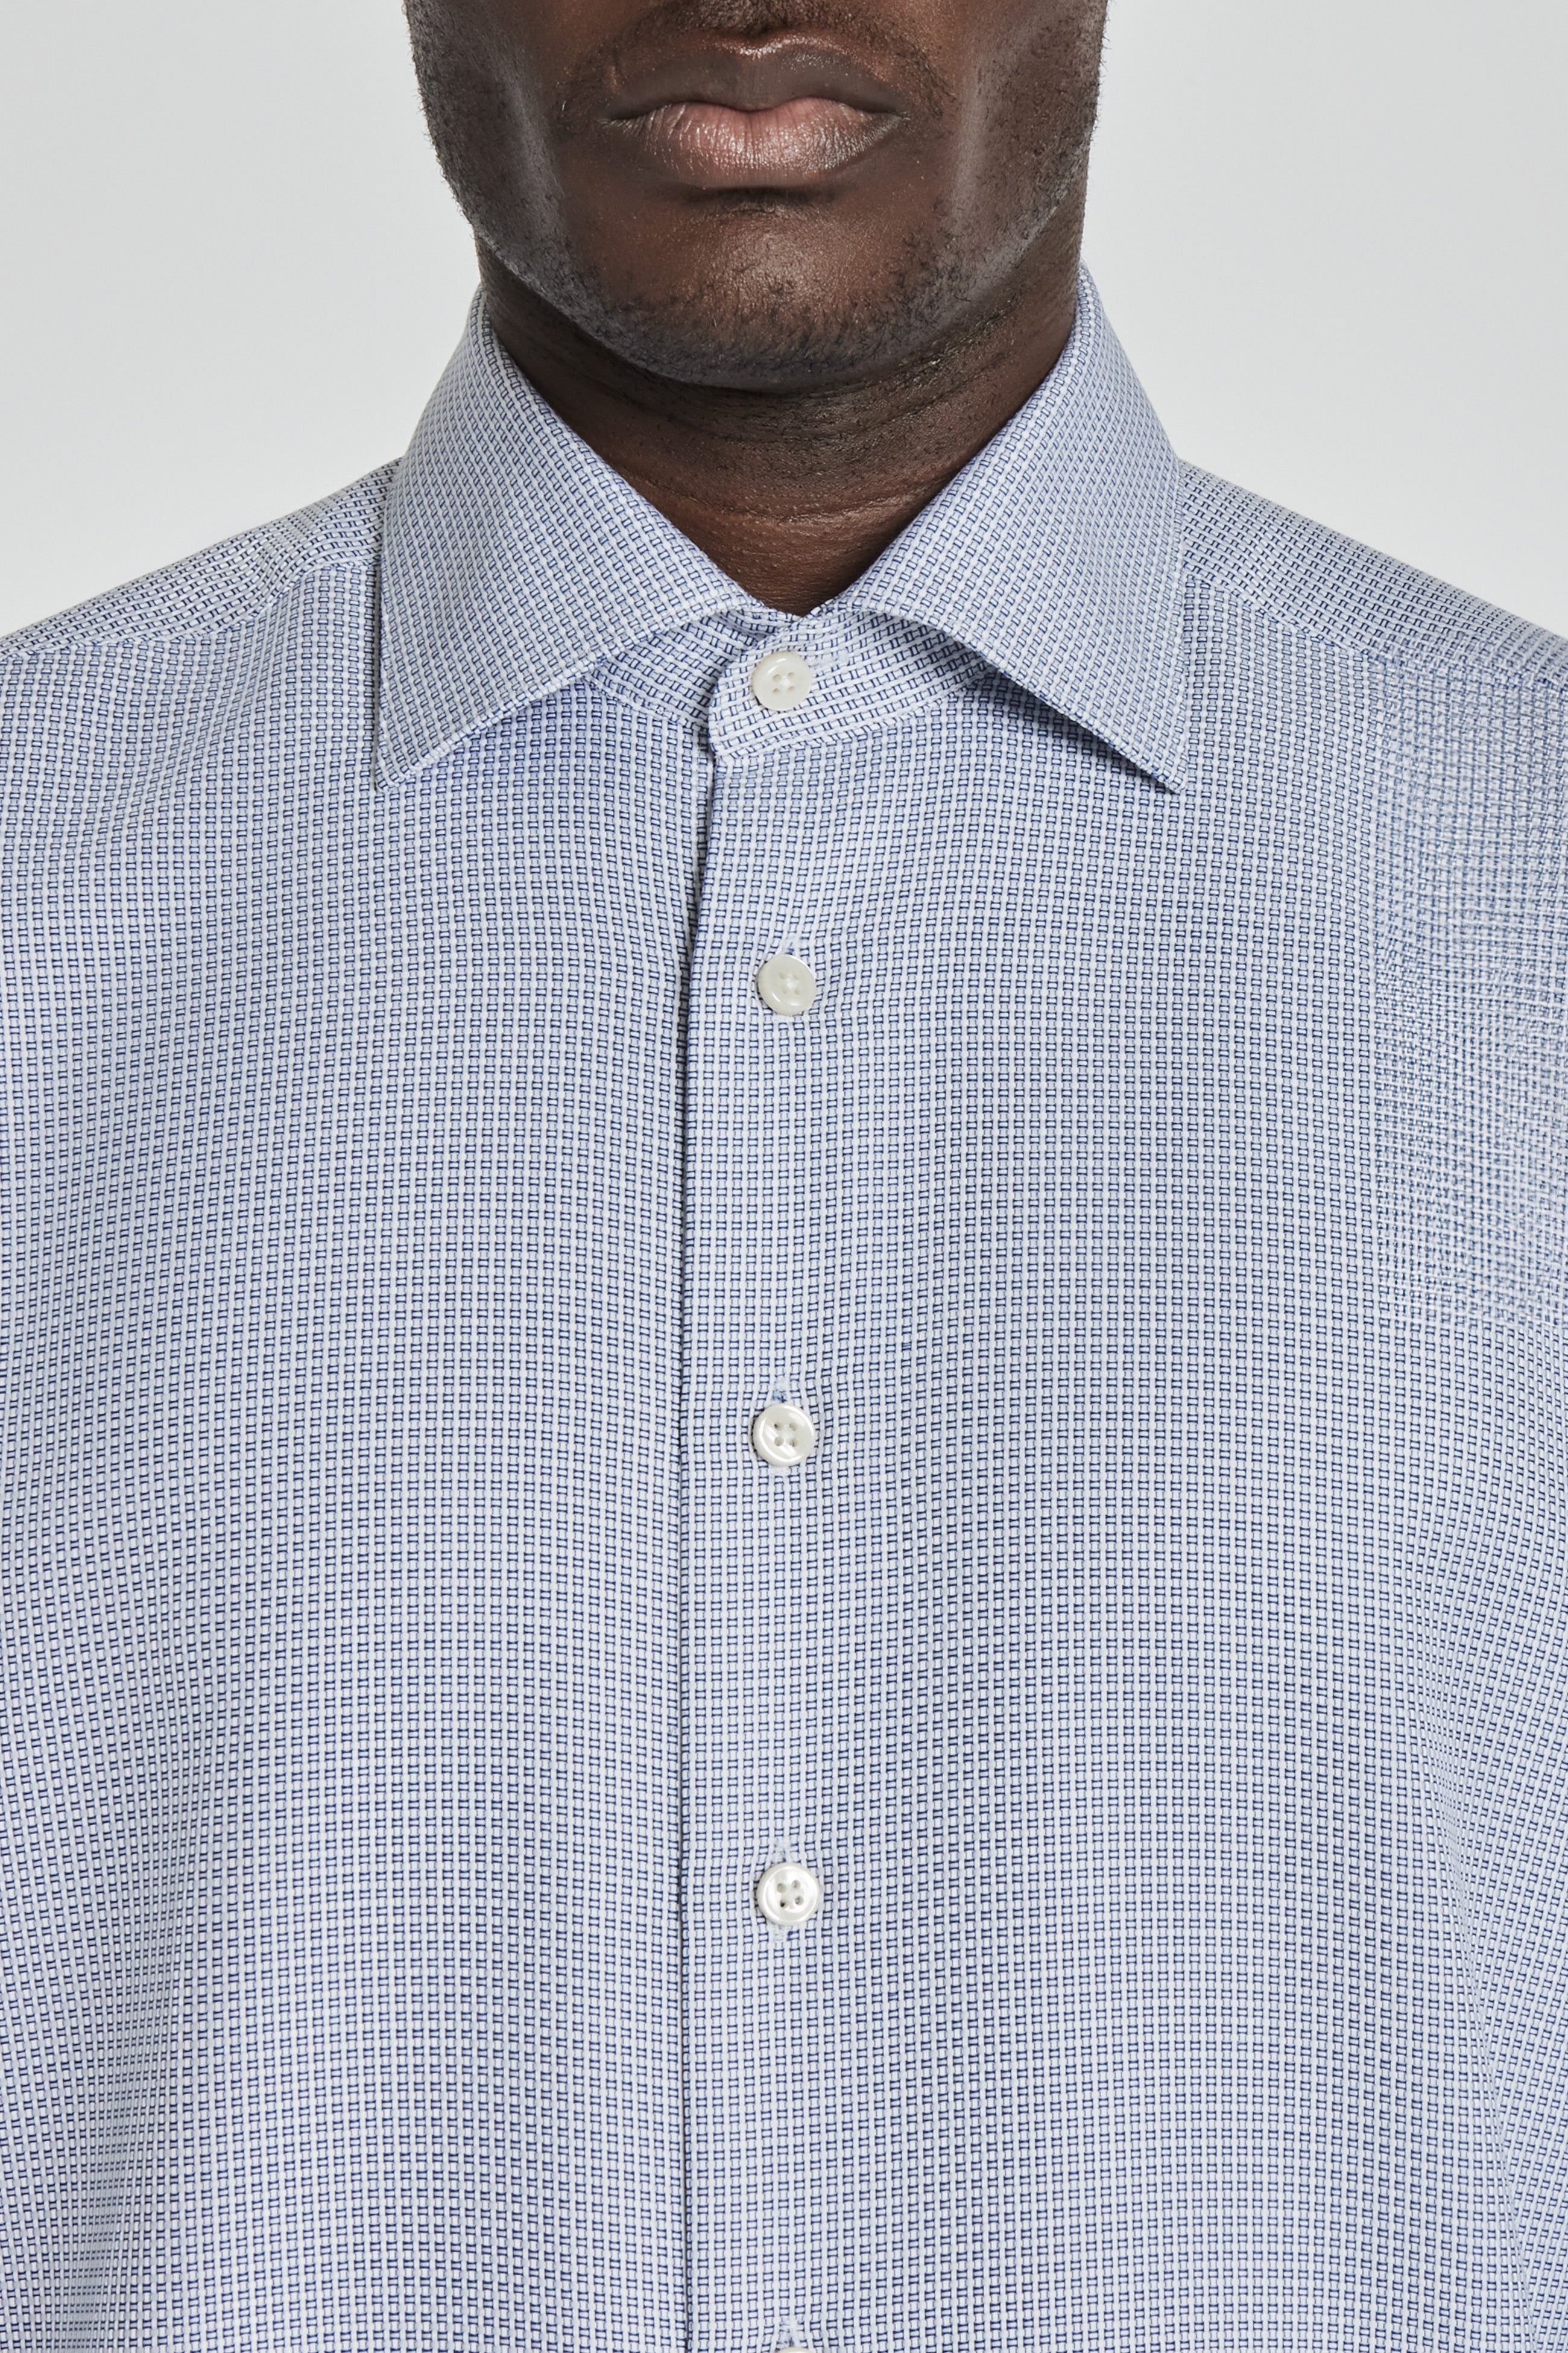 Vue alternative 1 Grosvenor chemise habillée en coton tissé géométrique en bleu marine